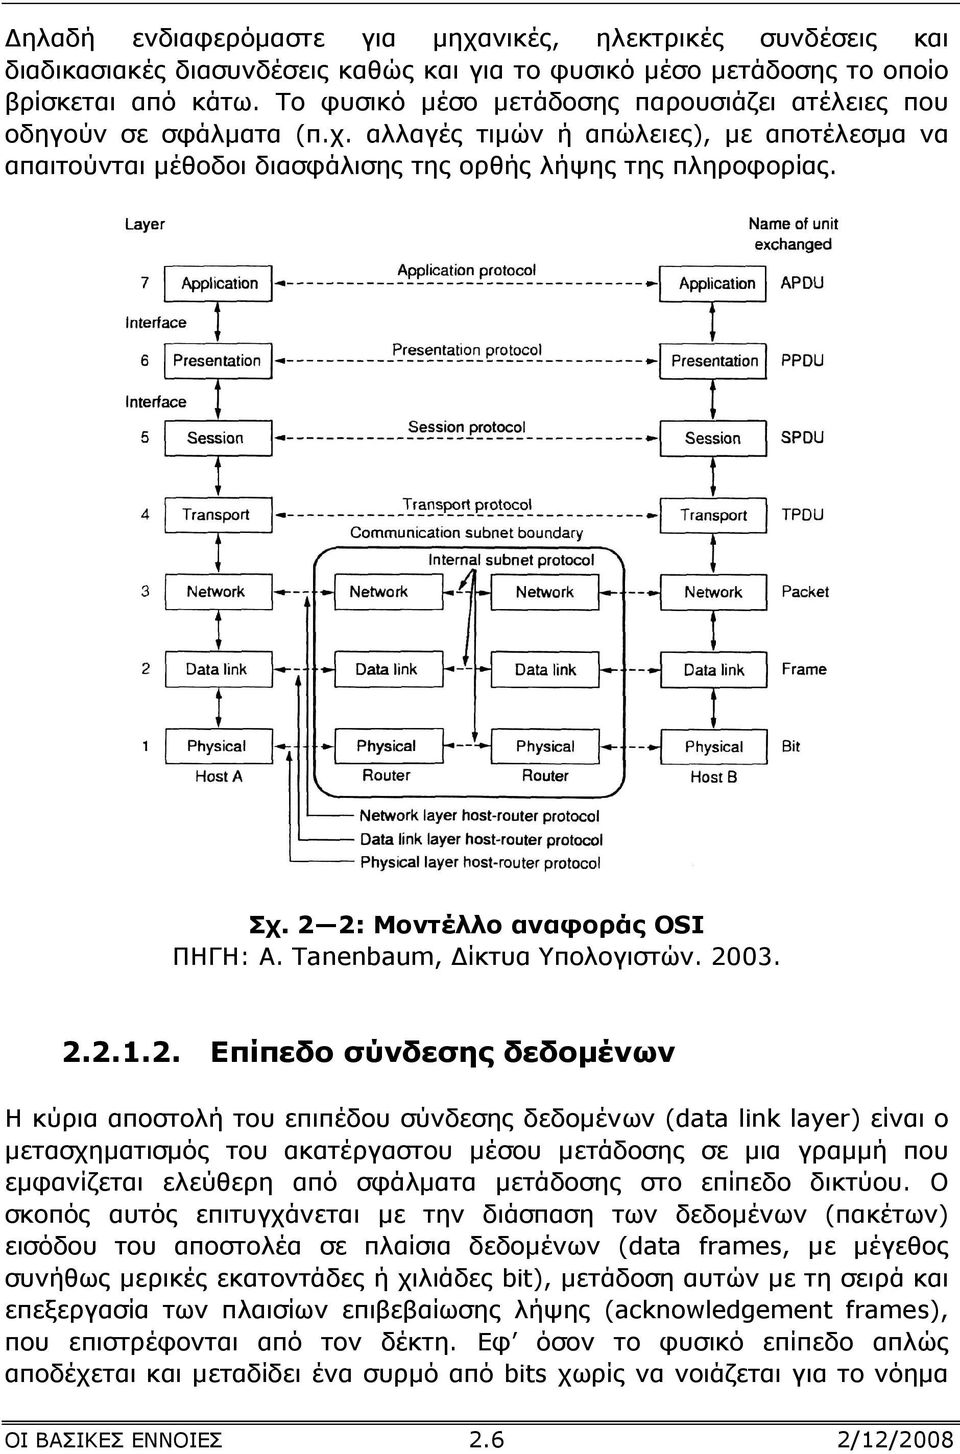 2 2: Μοντέλλο αναφοράς OSI ΠΗΓΗ: A. Tanenbaum, ίκτυα Υπολογιστών. 2003. 2.2.1.2. Επίπεδο σύνδεσης δεδοµένων Η κύρια αποστολή του επιπέδου σύνδεσης δεδοµένων (data link layer) είναι ο µετασχηµατισµός